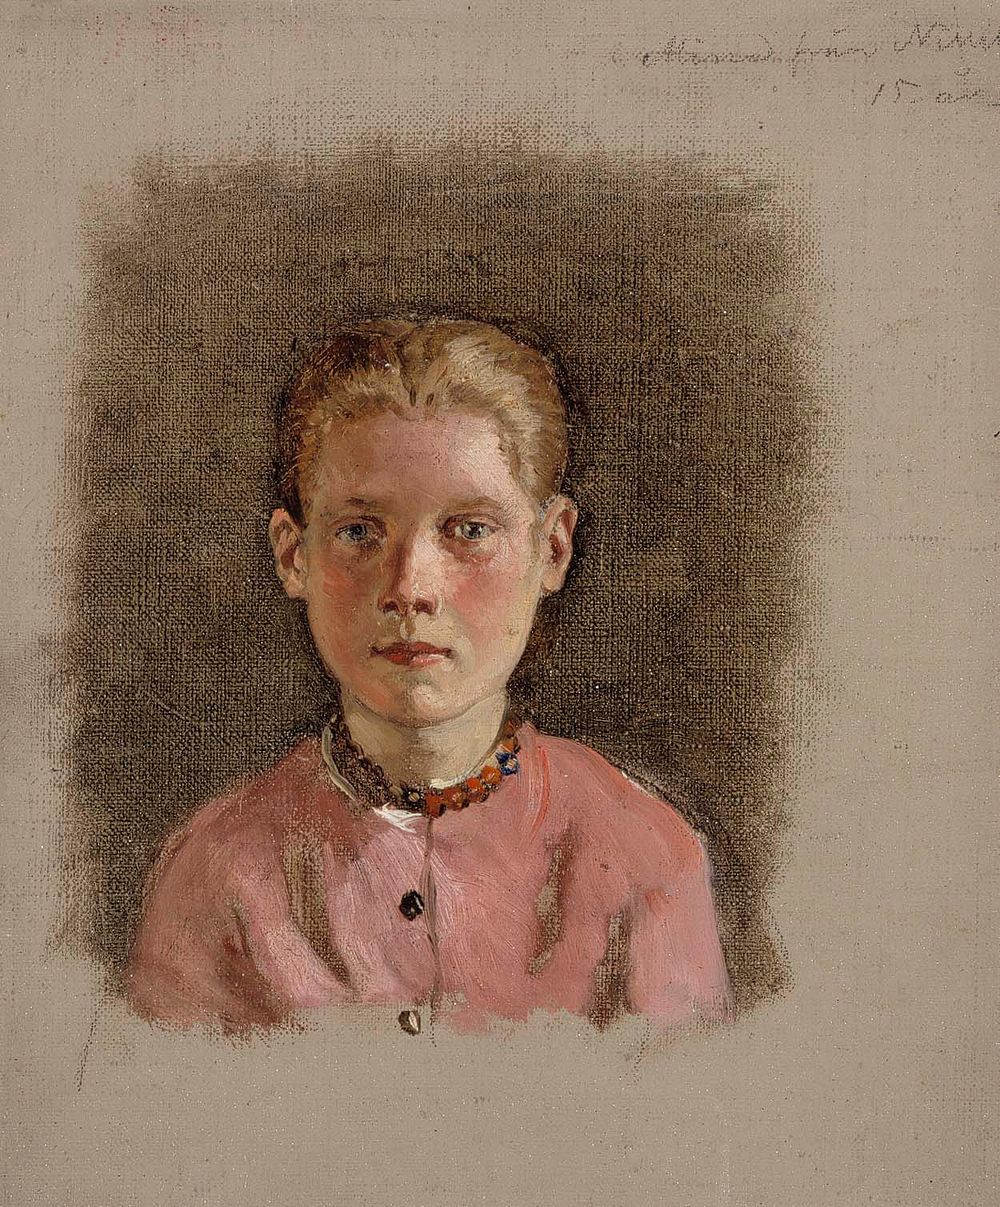 Tytön pää, harjoitelma, 1860 - 1870